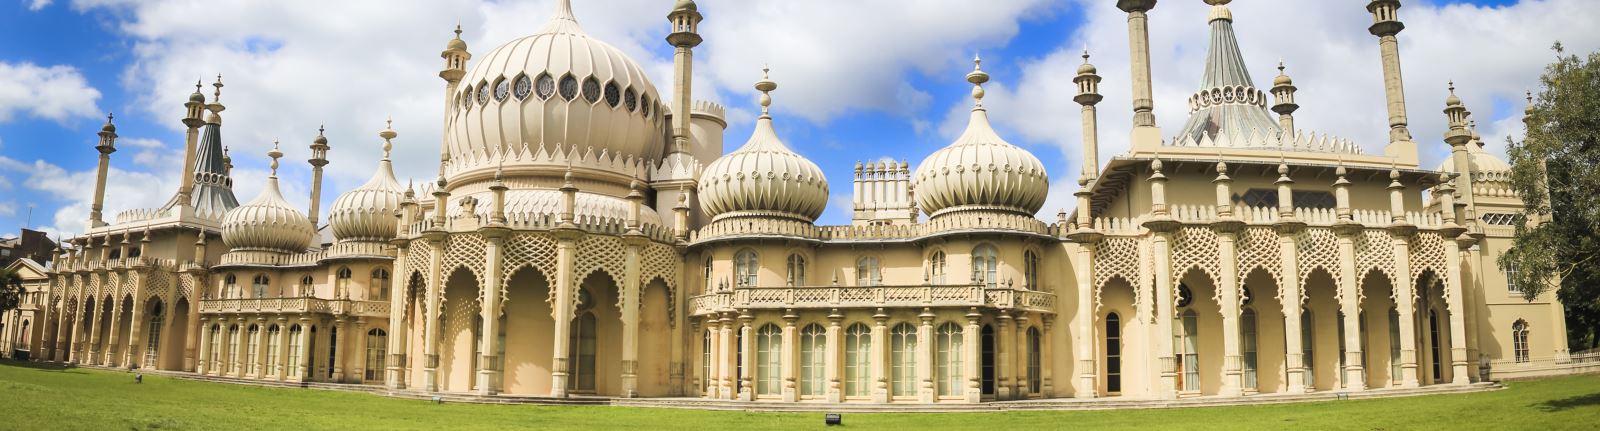 Brighton, England Weddings palace